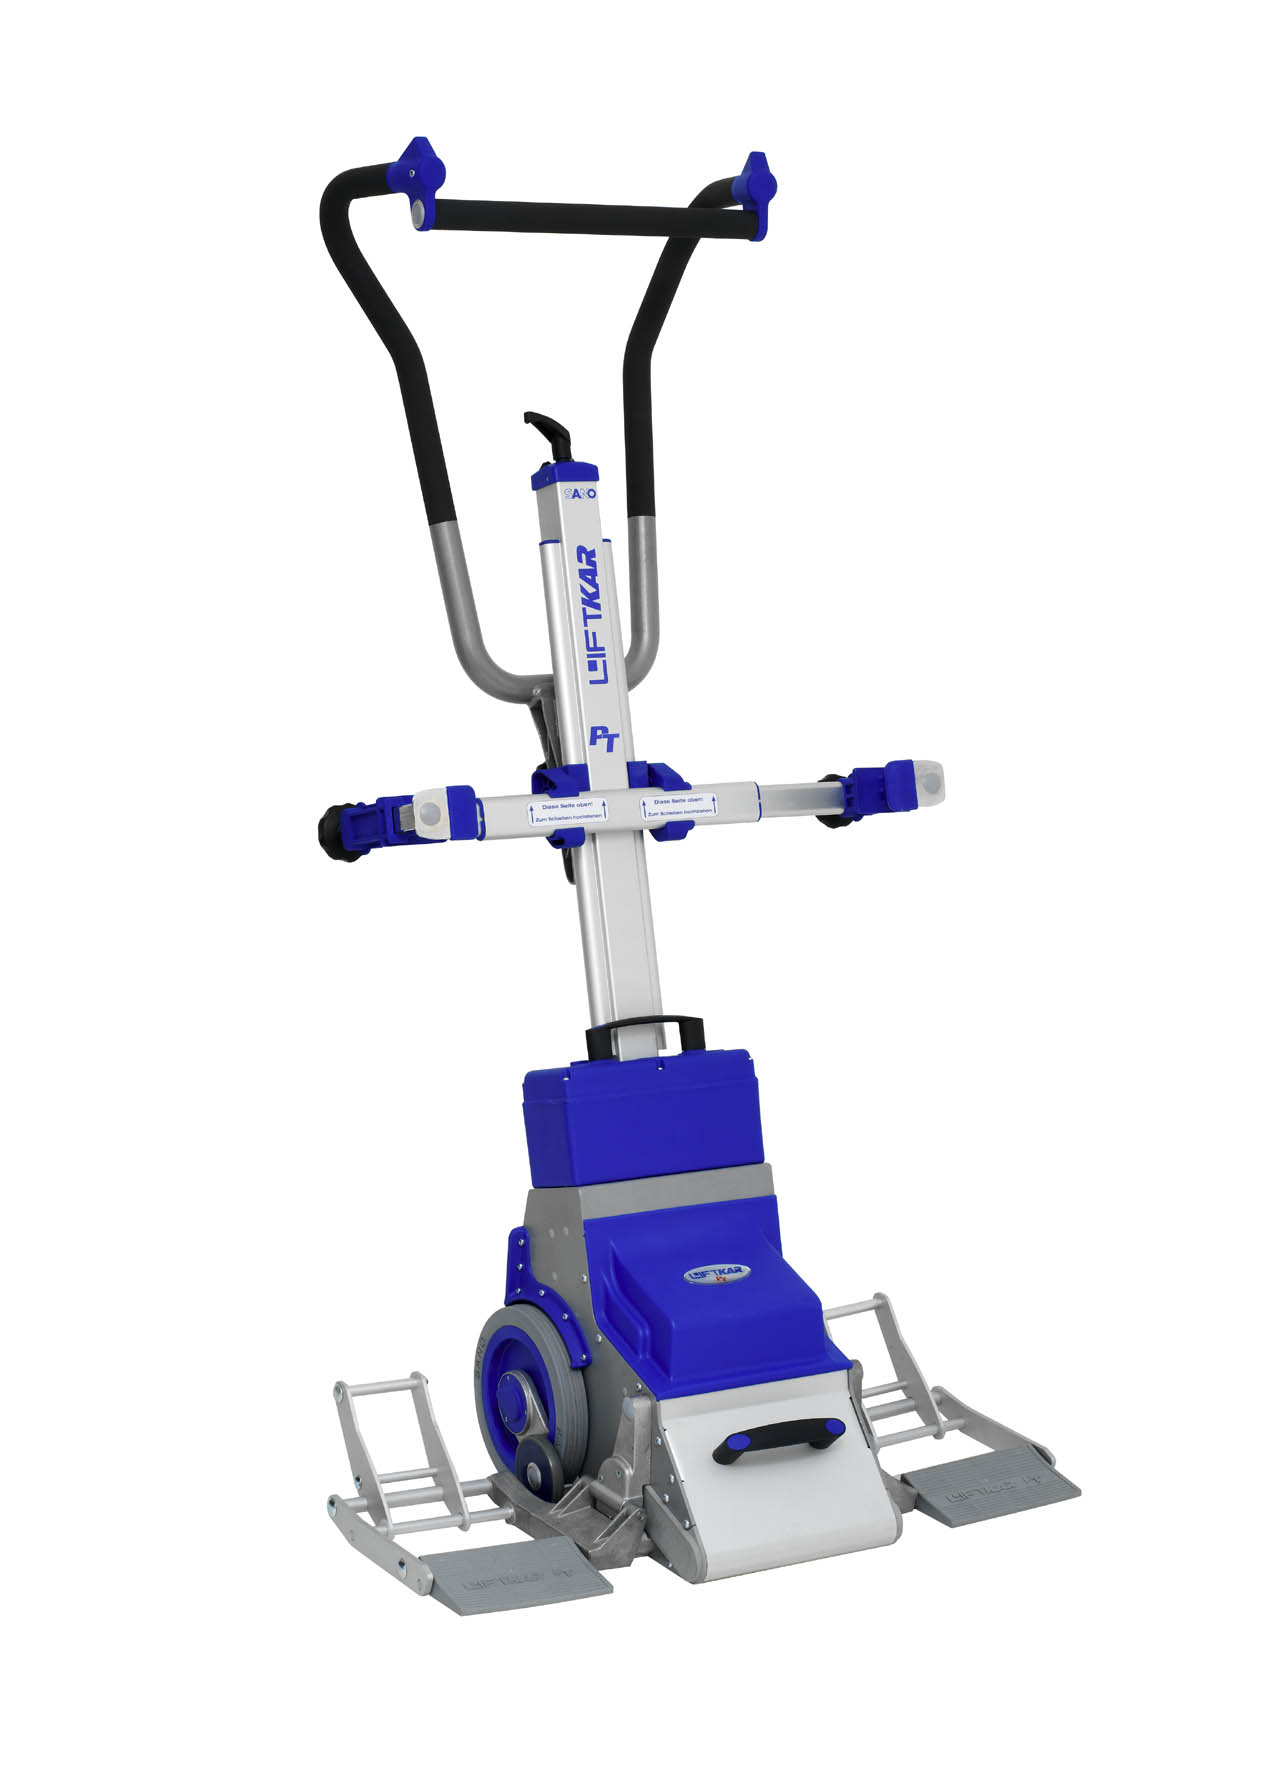 Monte-escalier à roues LG 2020 Antano pour fauteuil roulant